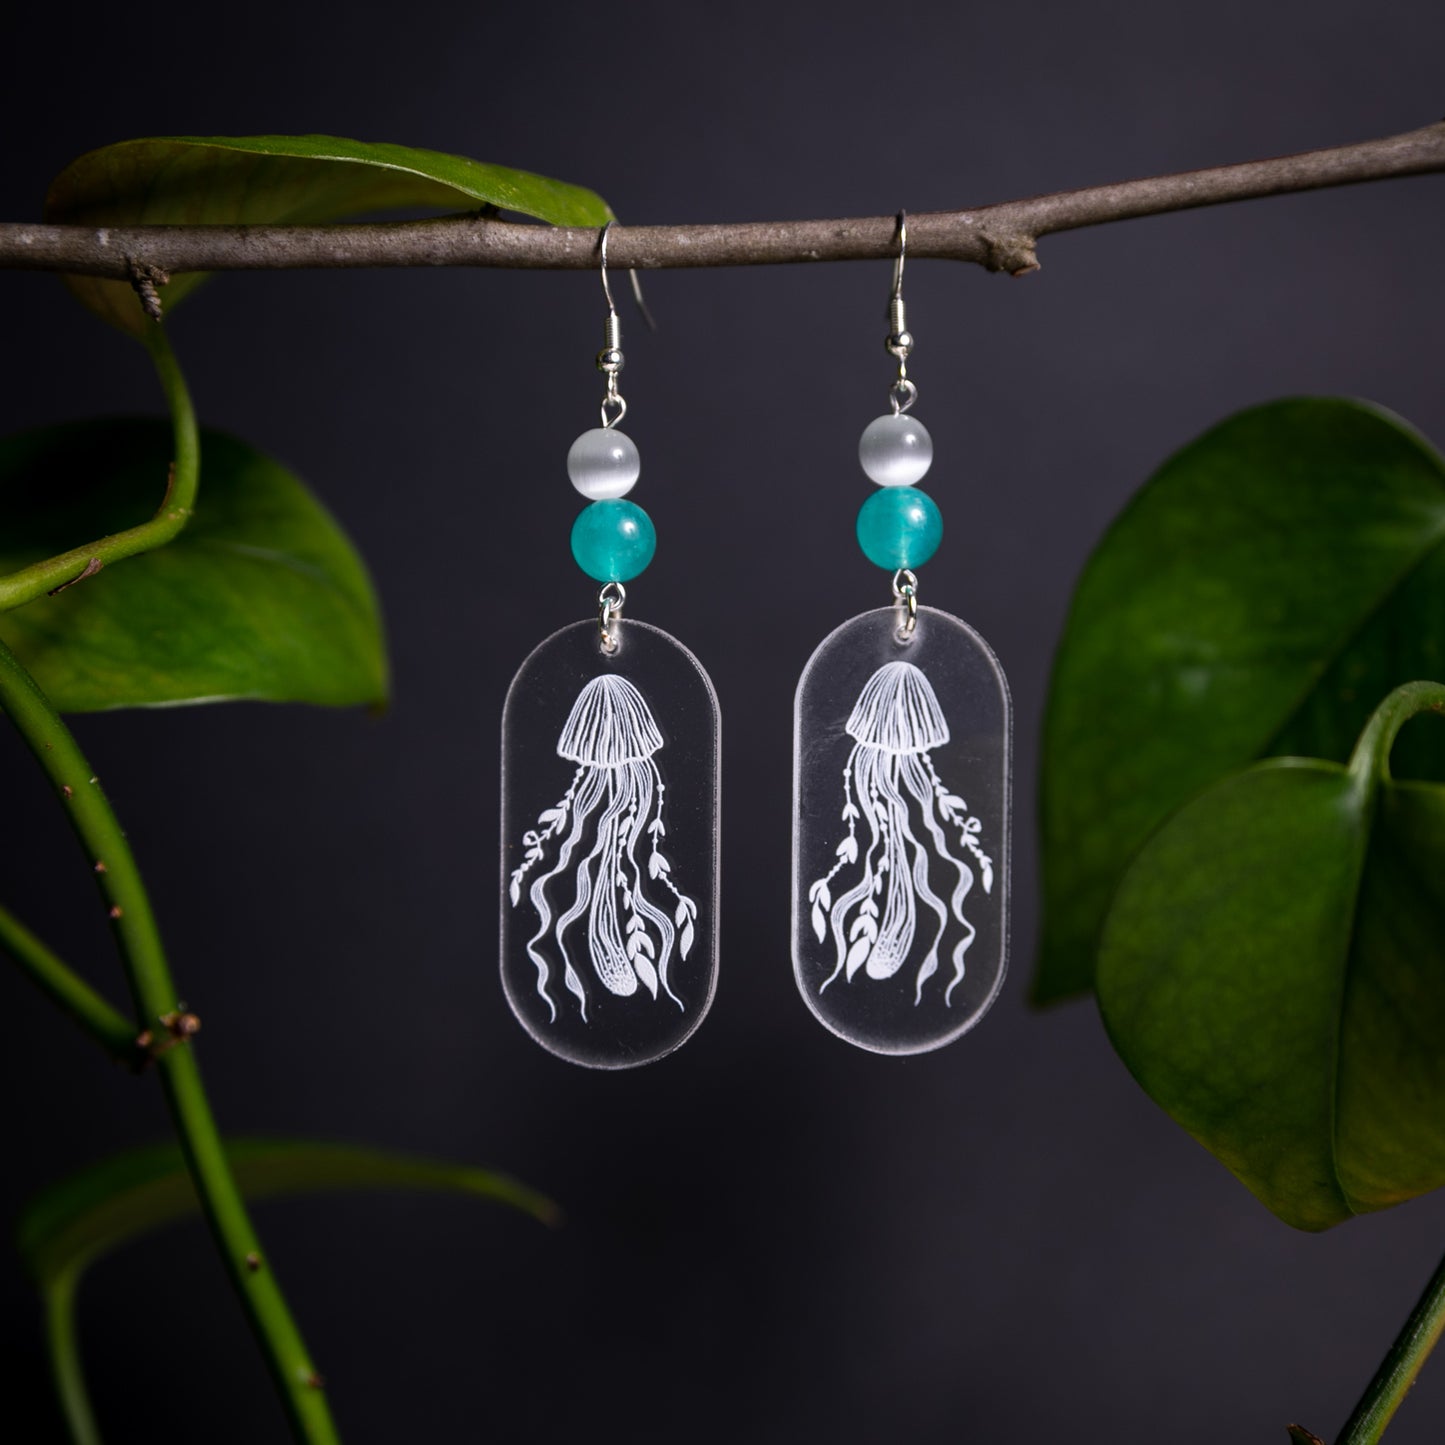 Crystal Clear Acrylic Earrings - Jellyfish